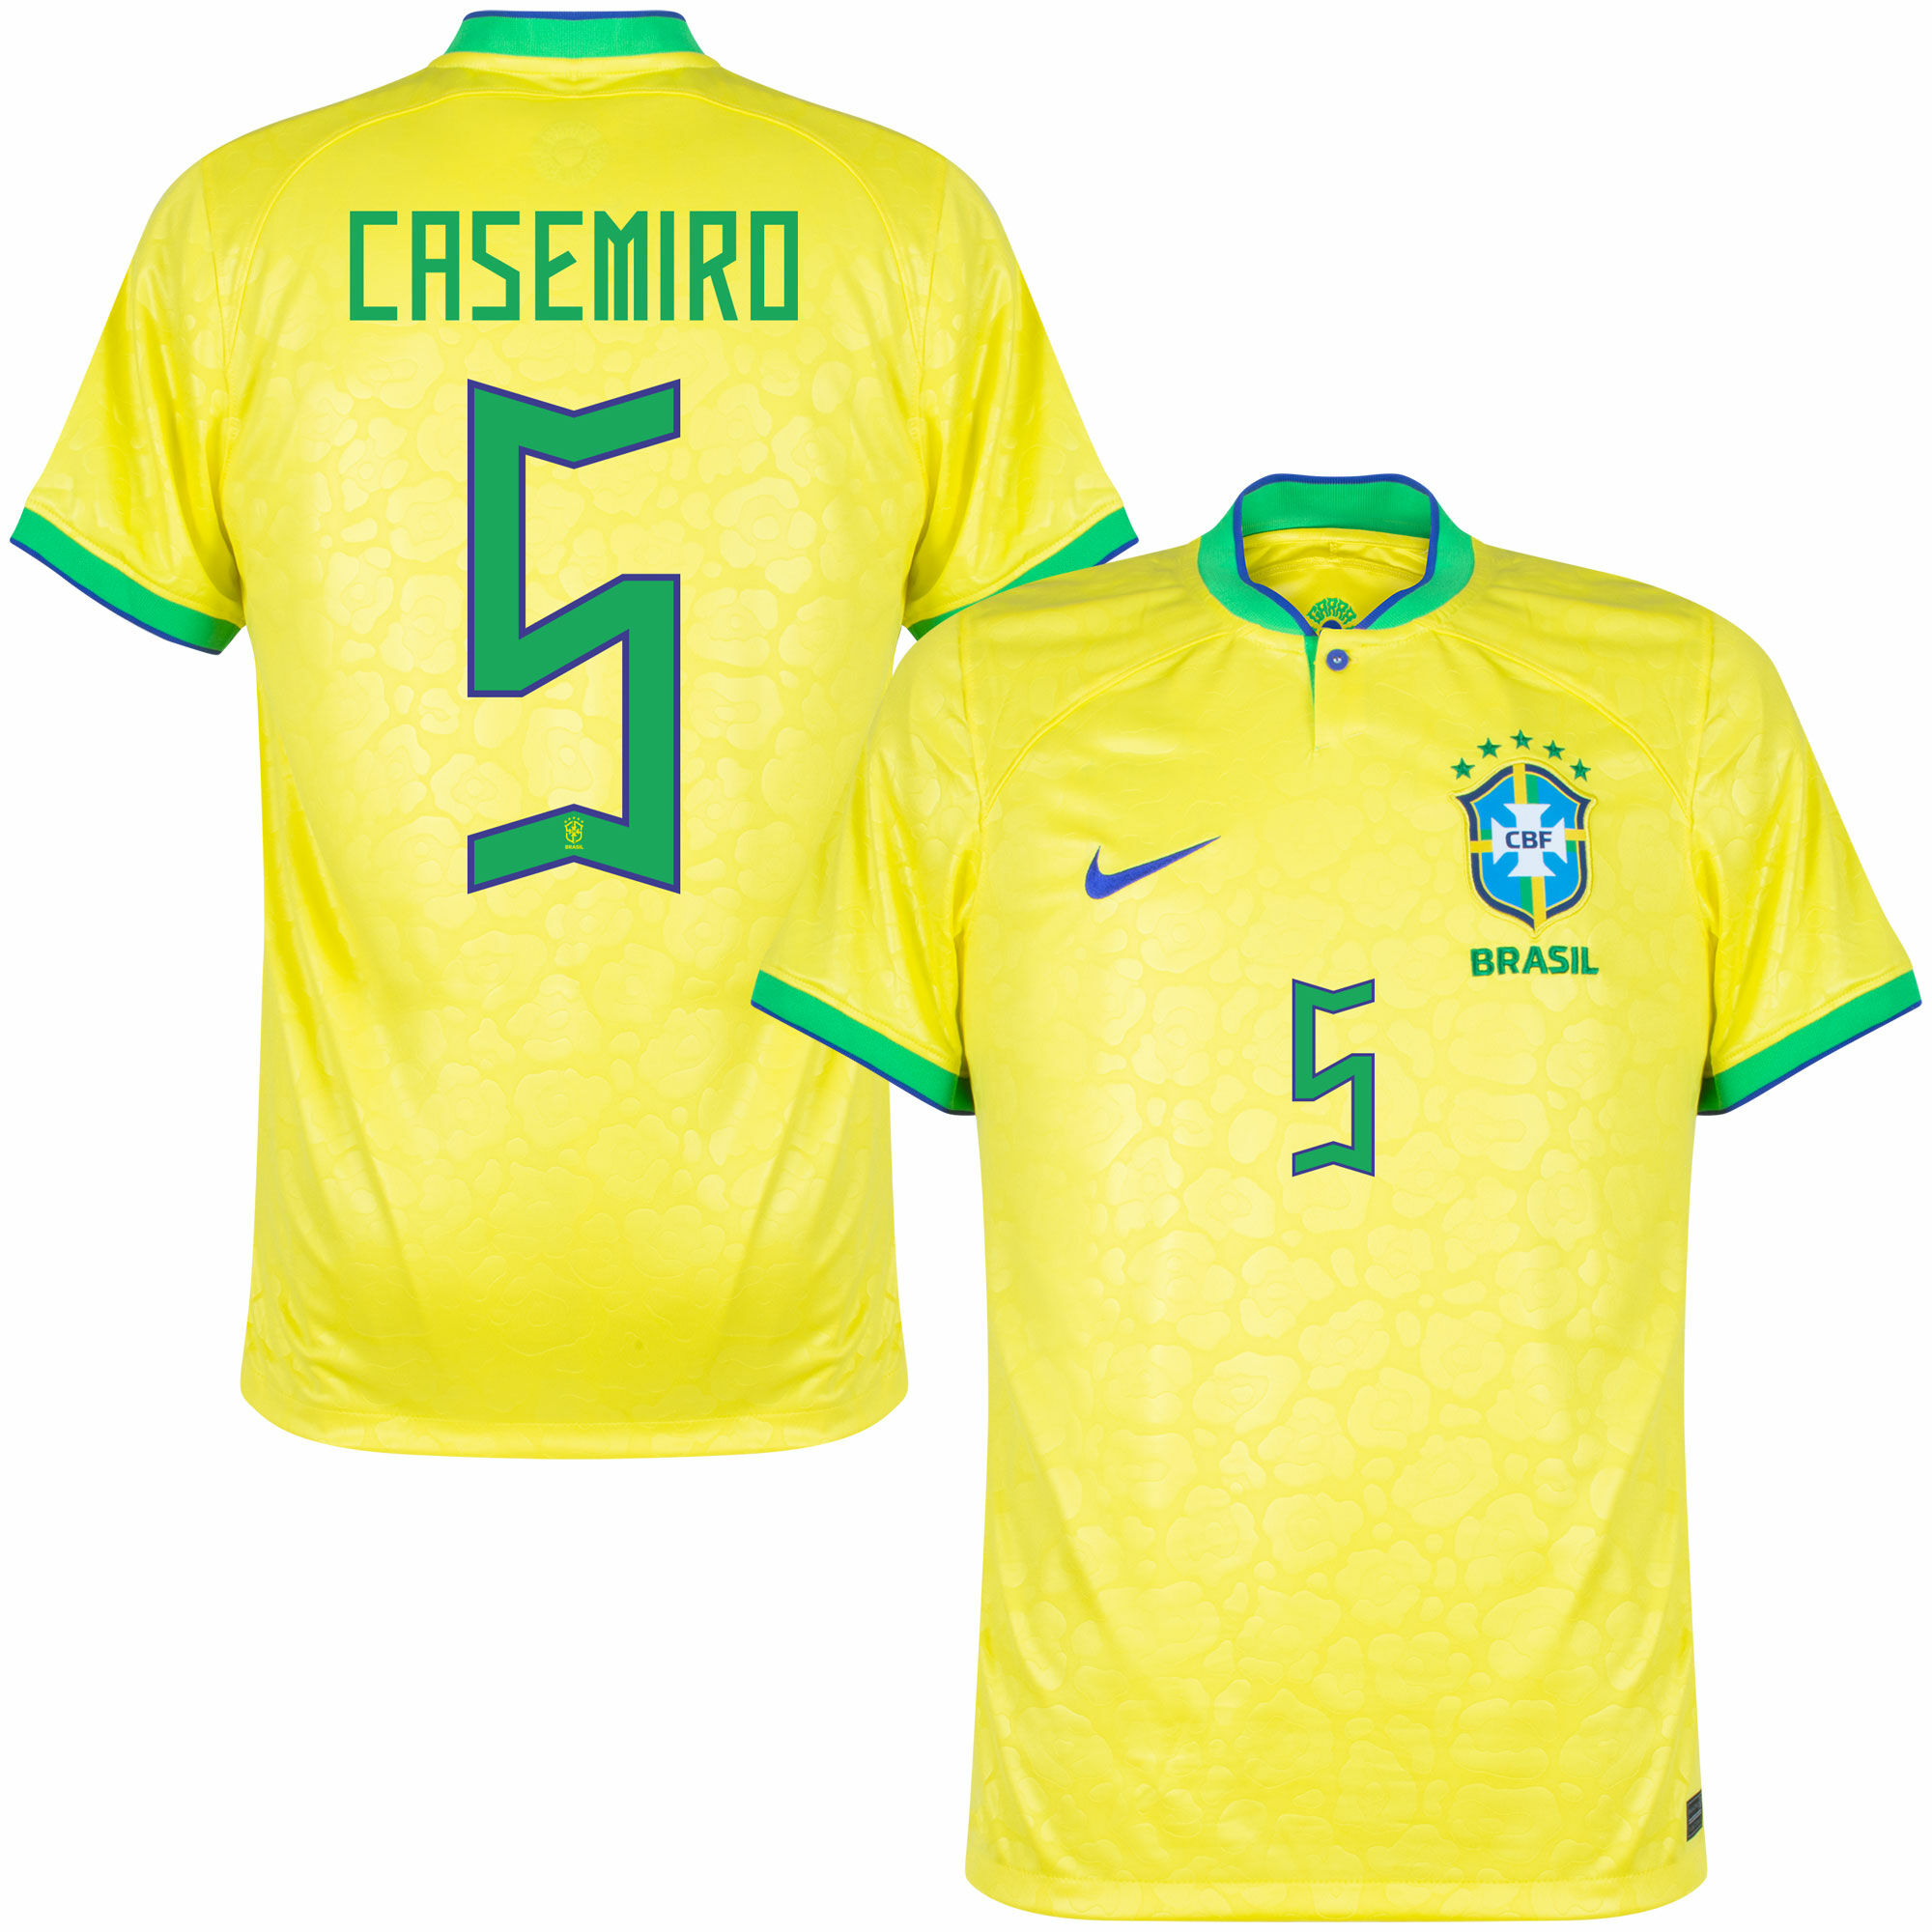 Brazílie - Dres fotbalový - Casemiro, oficiální potisk, žlutý, číslo 5, domácí, sezóna 2022/23